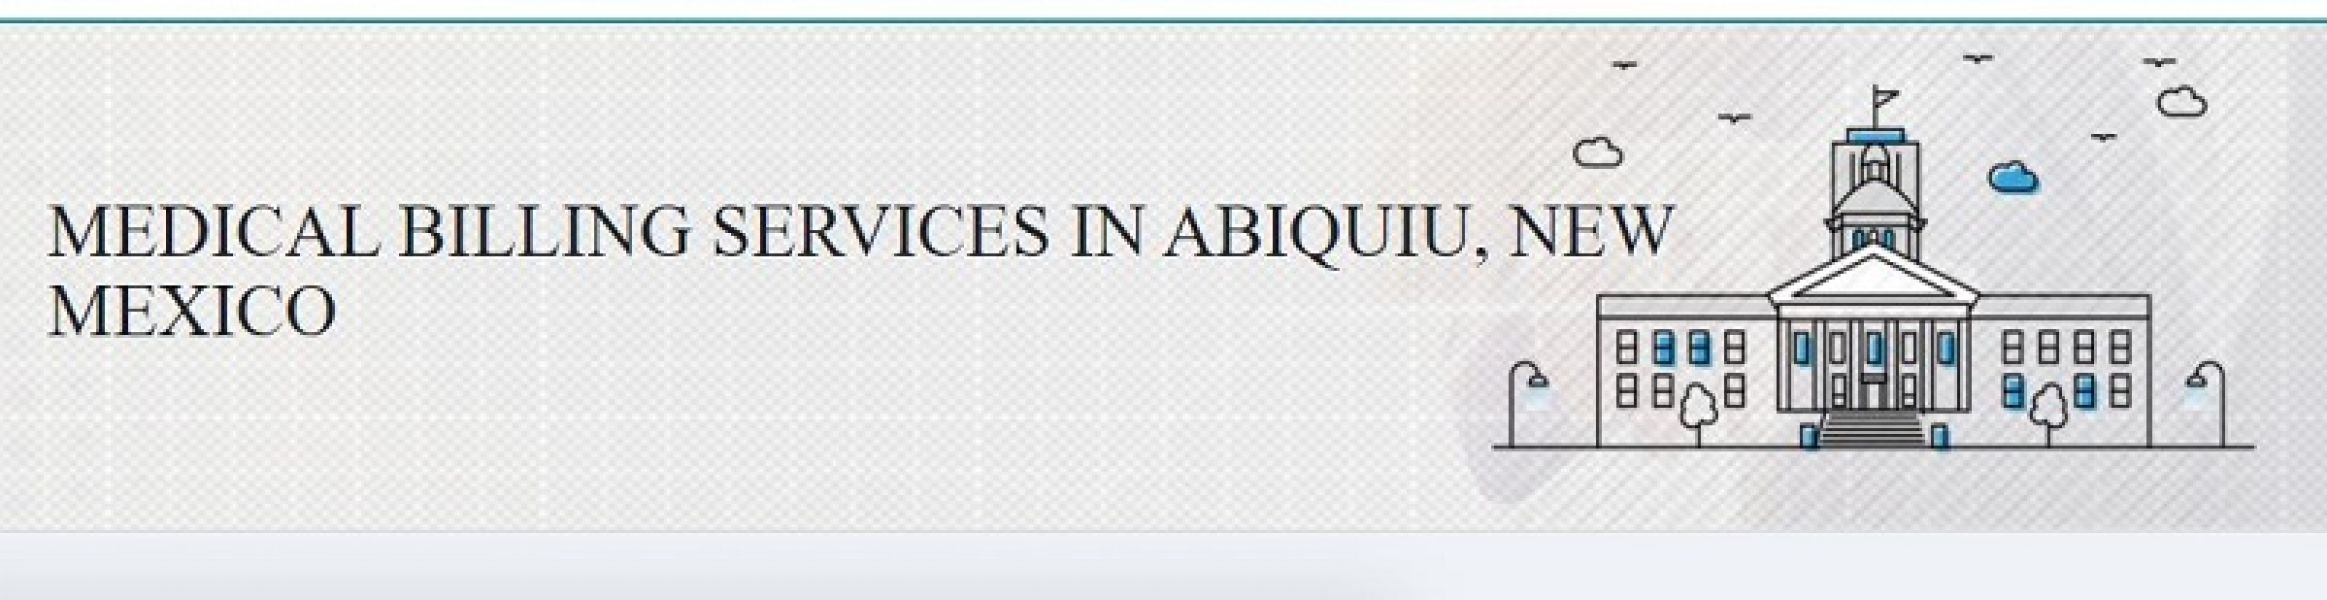 Medical billing services in Abiquiu, NM